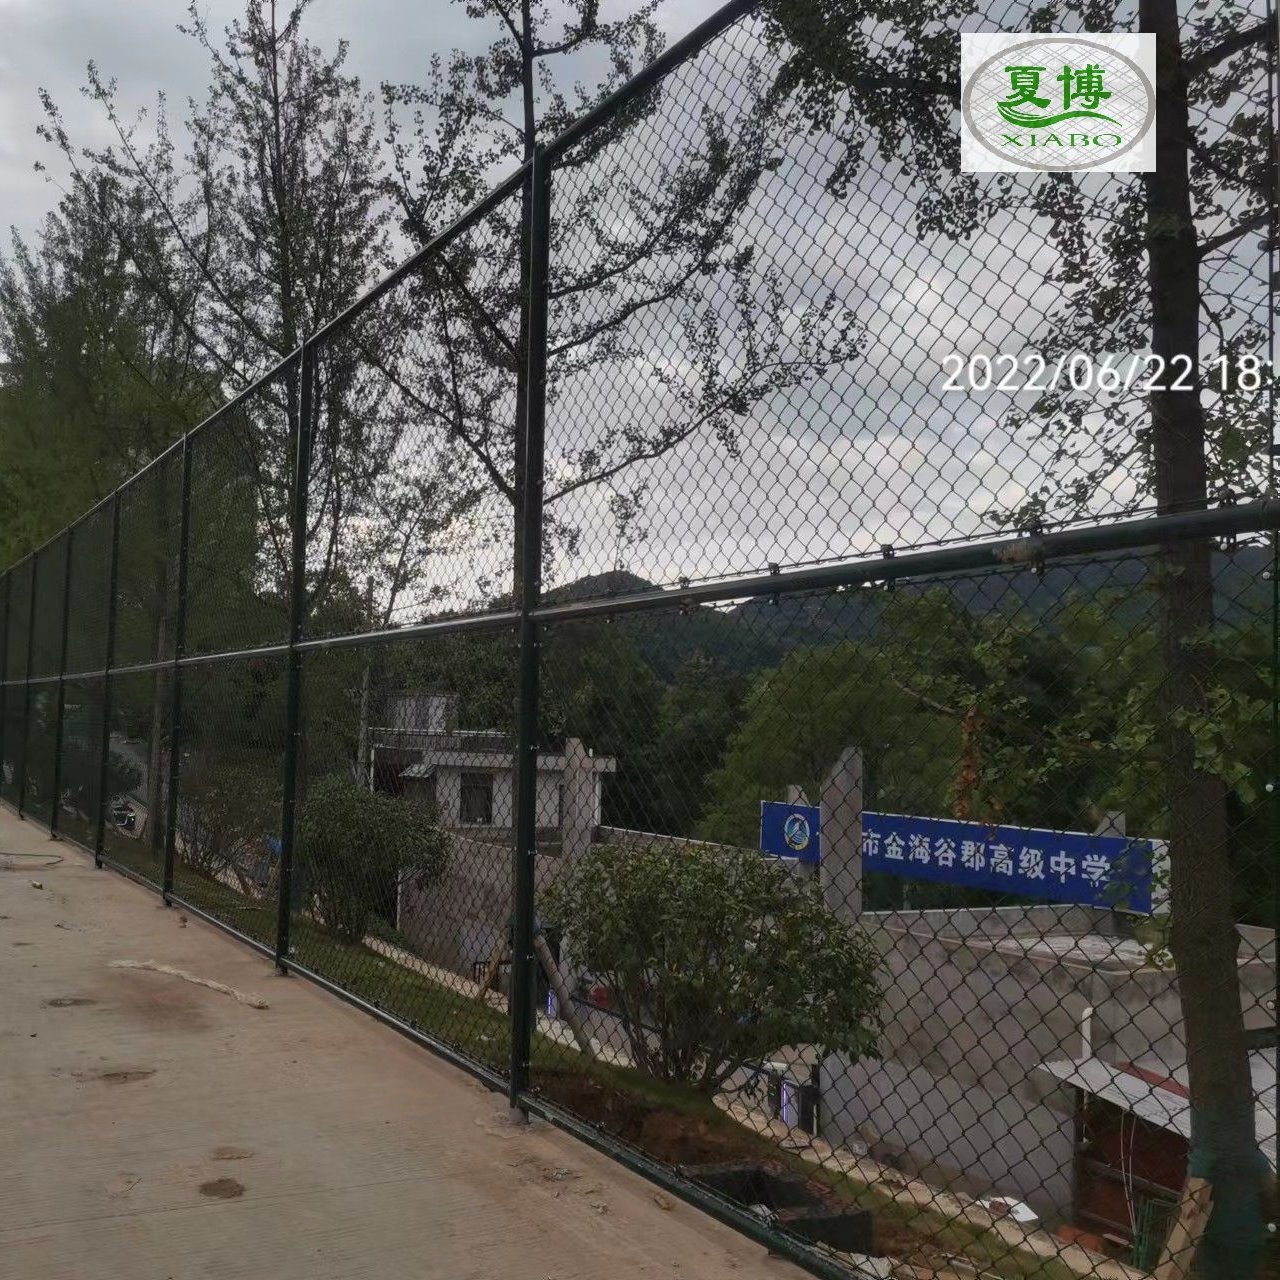 铁丝网  训练隔离栏	球场围墙围挡	运动围墙铁网	网球场围墙金属围网  角欧乐